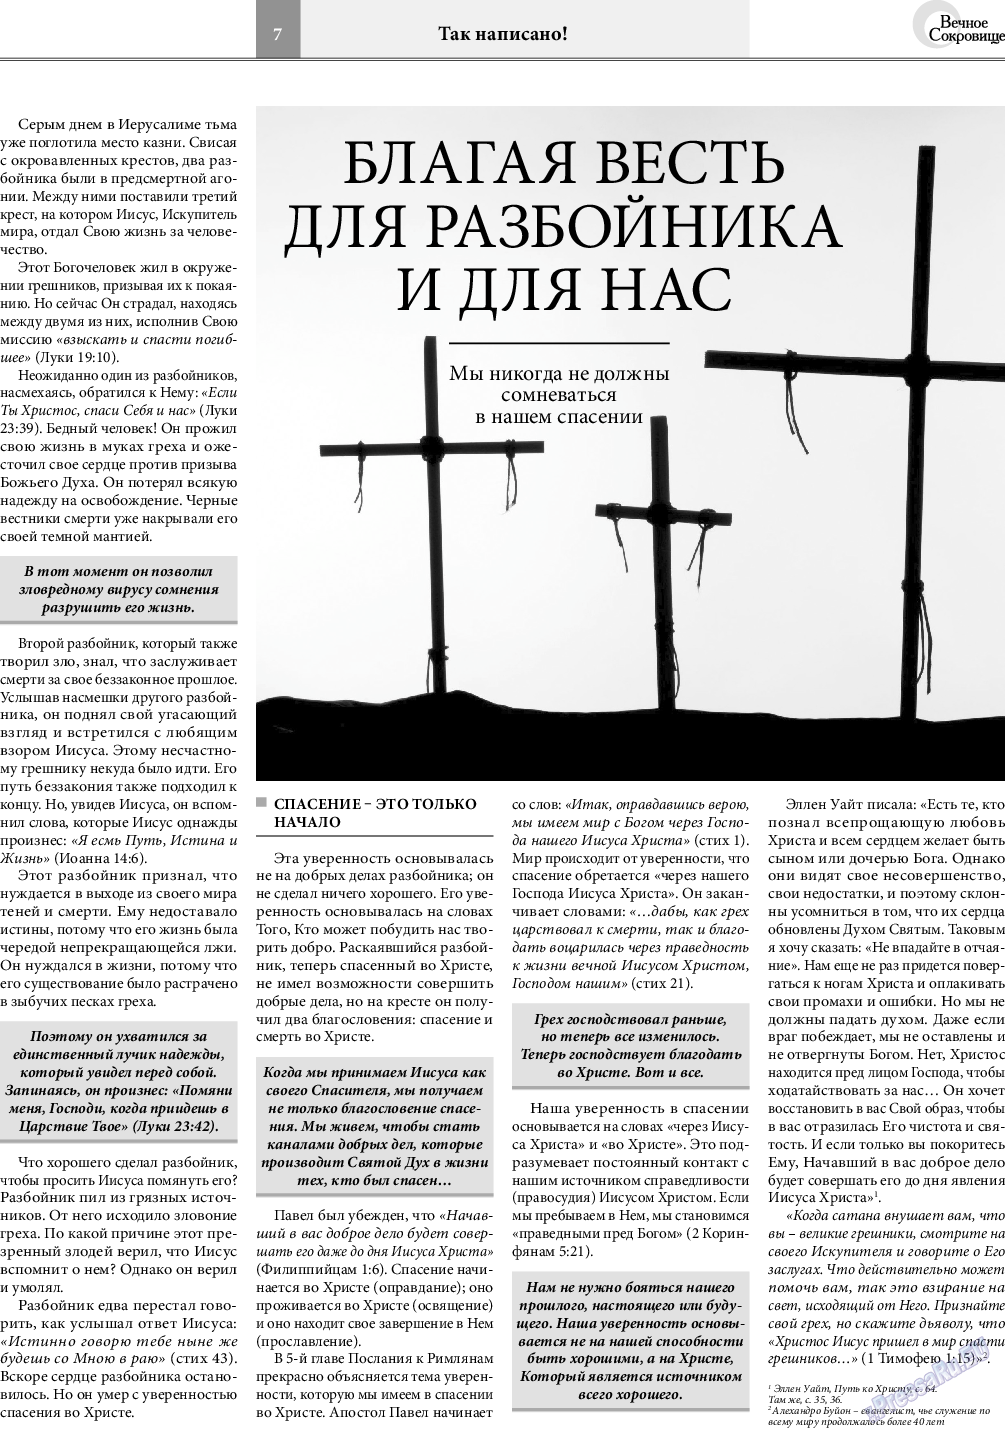 Вечное сокровище, газета. 2020 №4 стр.7